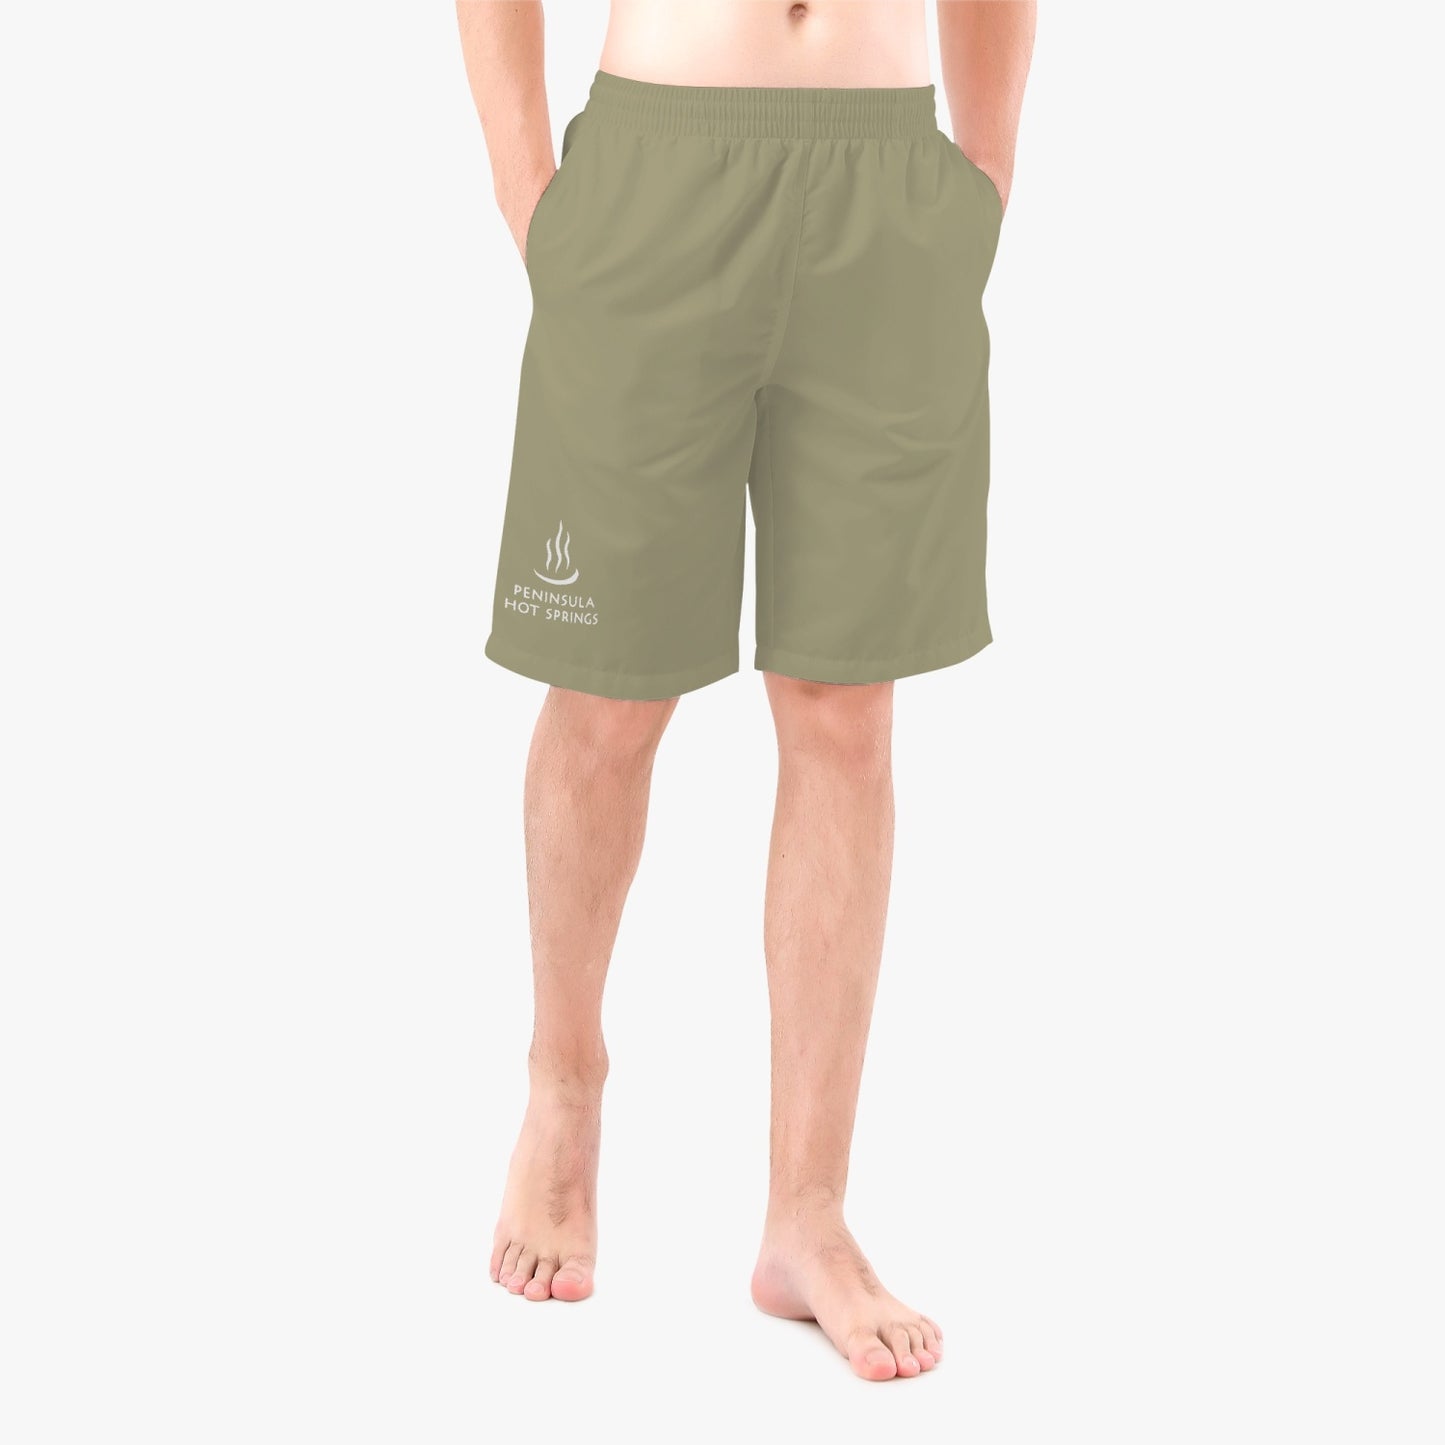 PENINSULAR HOT SPRINGS Men’s Board Shorts - Khaki